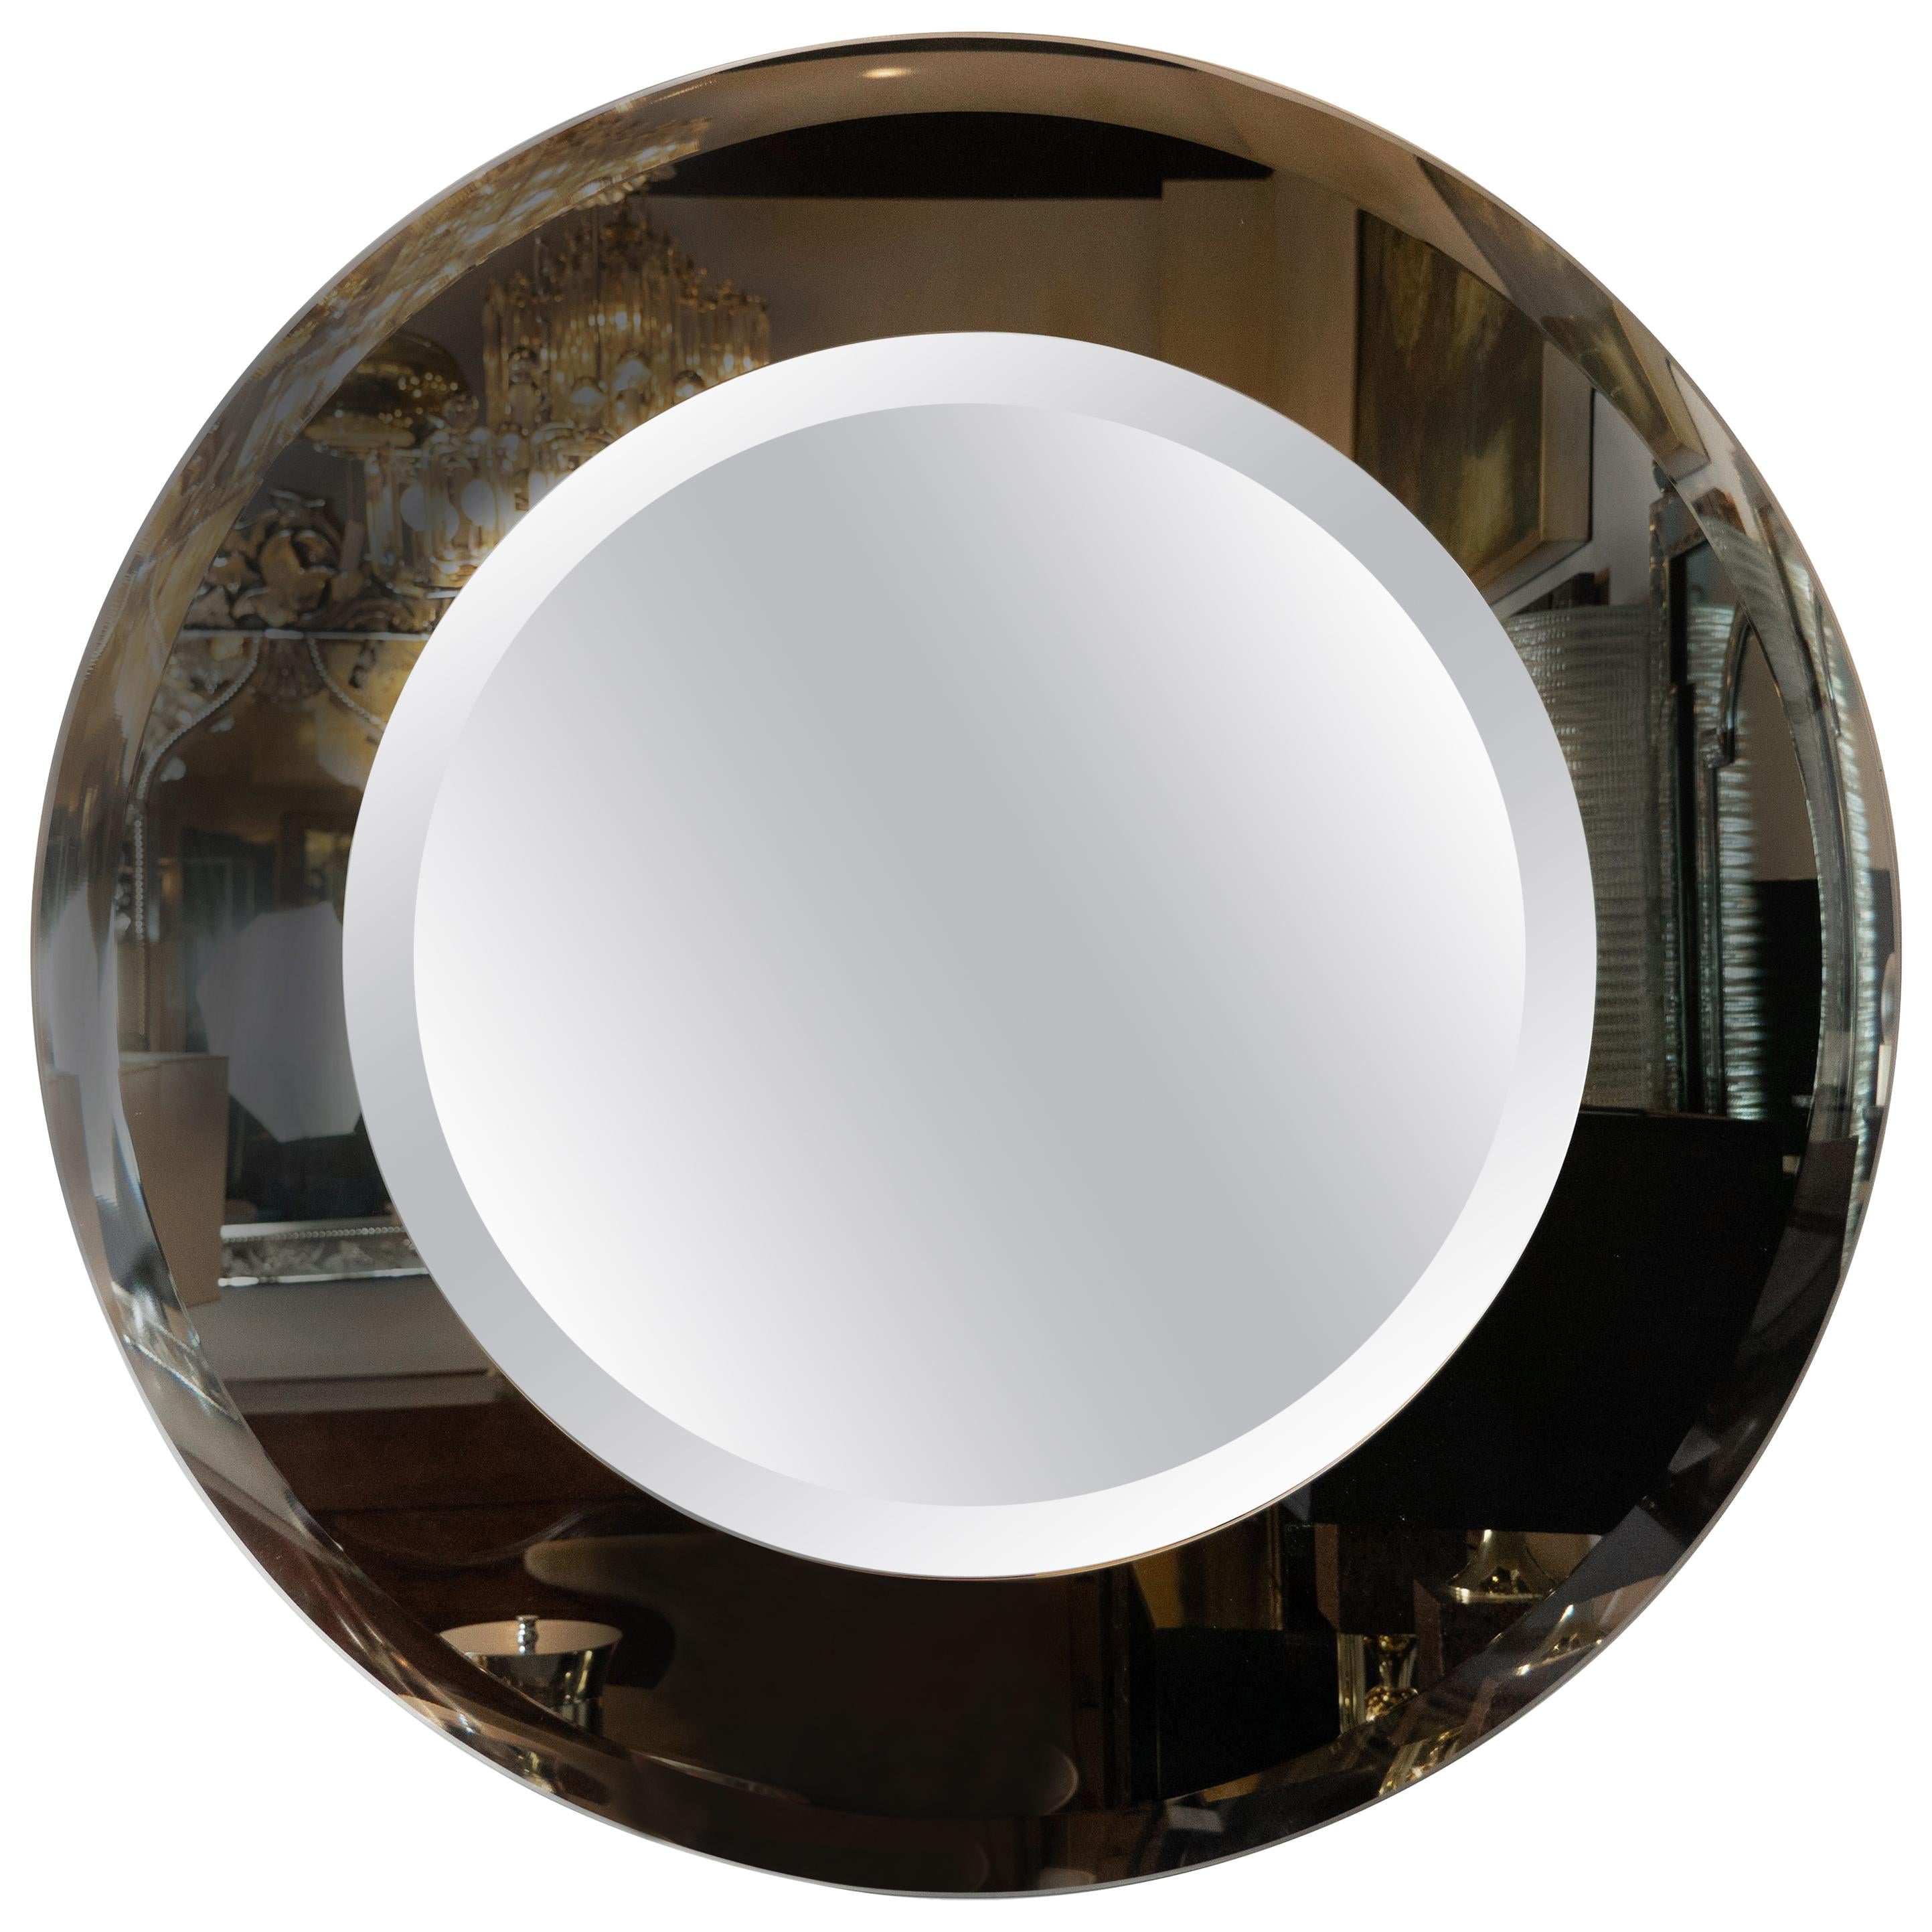 Miroir Starfire moderniste et sophistiqué fait sur mesure avec cercles concentriques